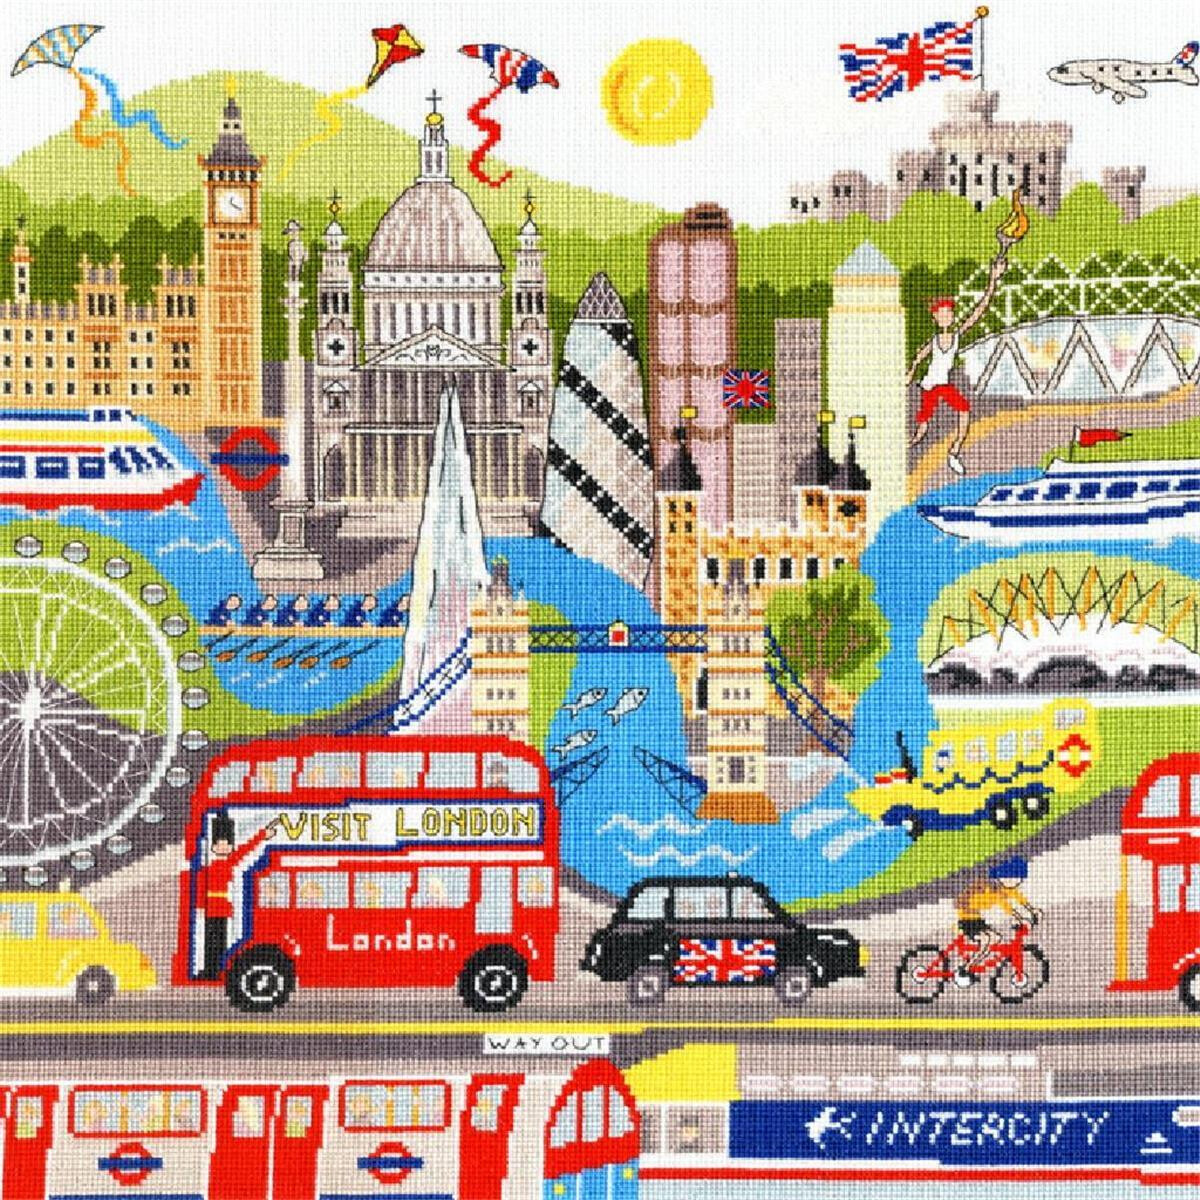 Un collage illustrato di Londra, con punti di riferimento...